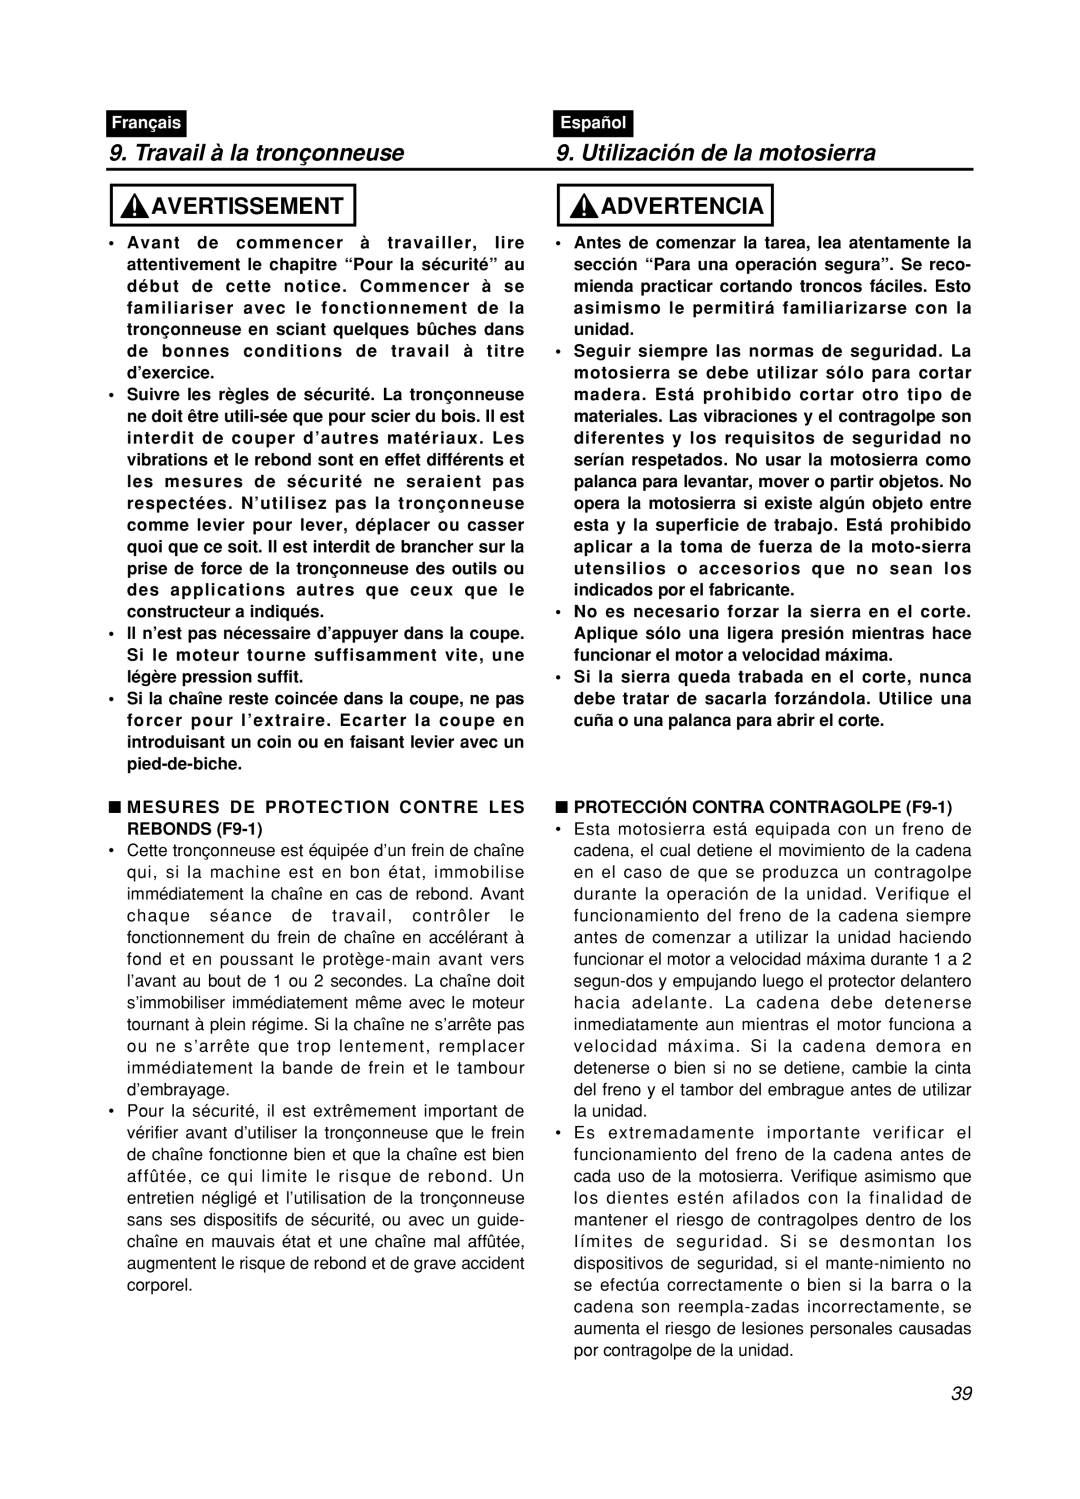 Zenoah GZ400 manual Travail à la tronçonneuse, Utilización de la motosierra, Avertissement, Advertencia, Français, Español 